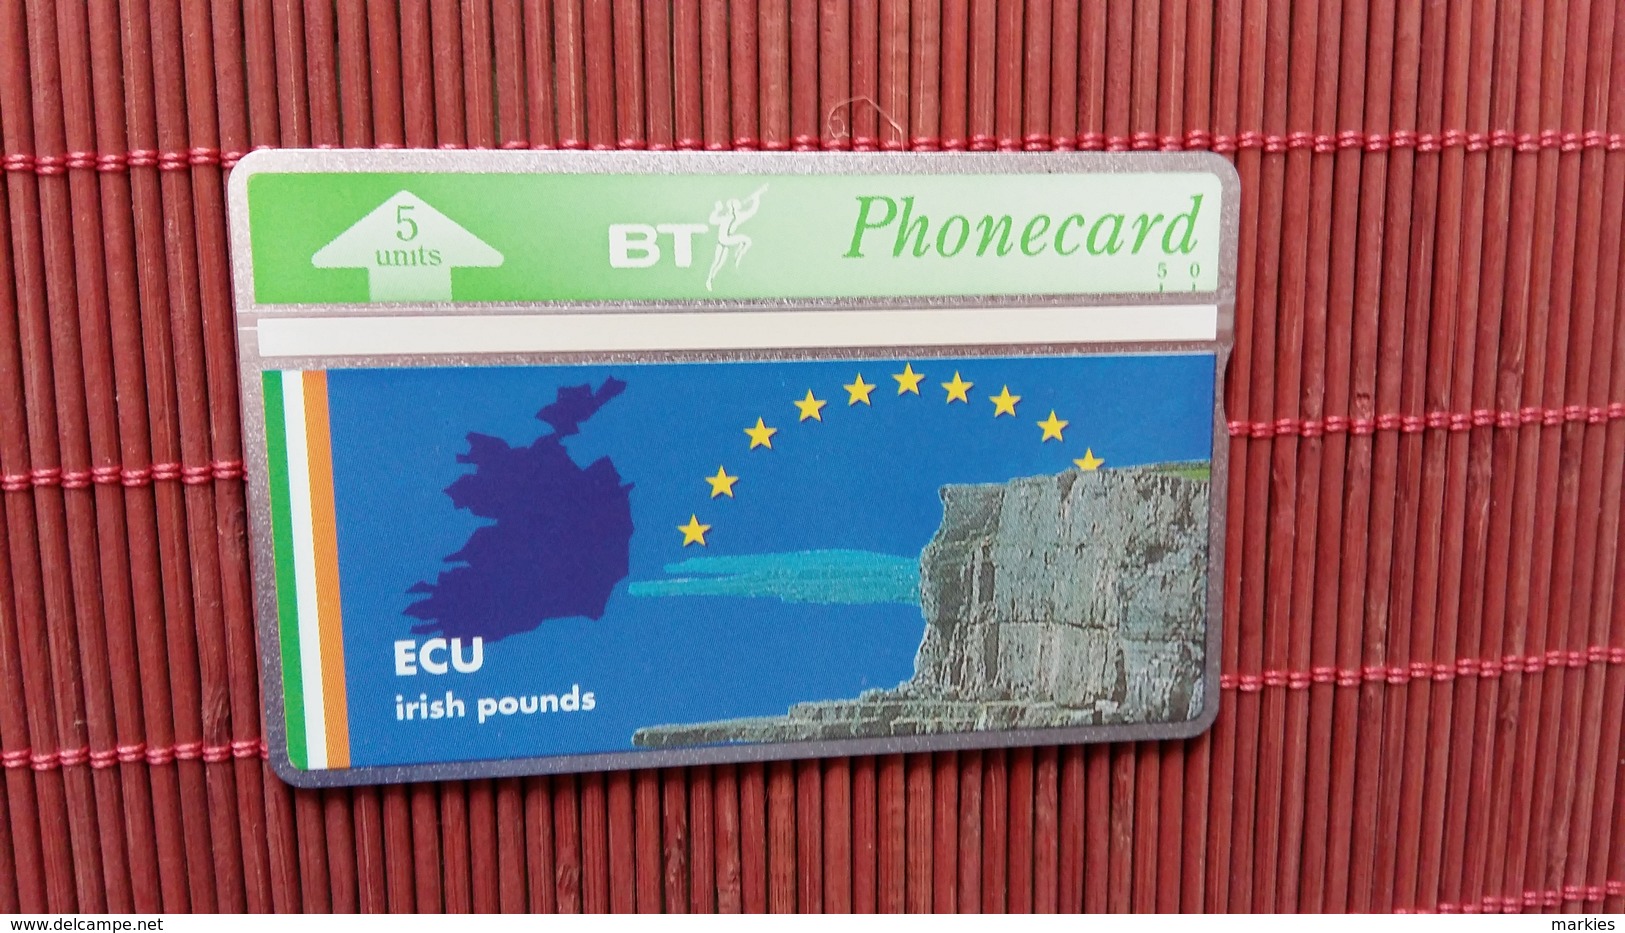 Phonecard Private ECU 309 G (Mint,Neuve)  Rare - BT Private Issues